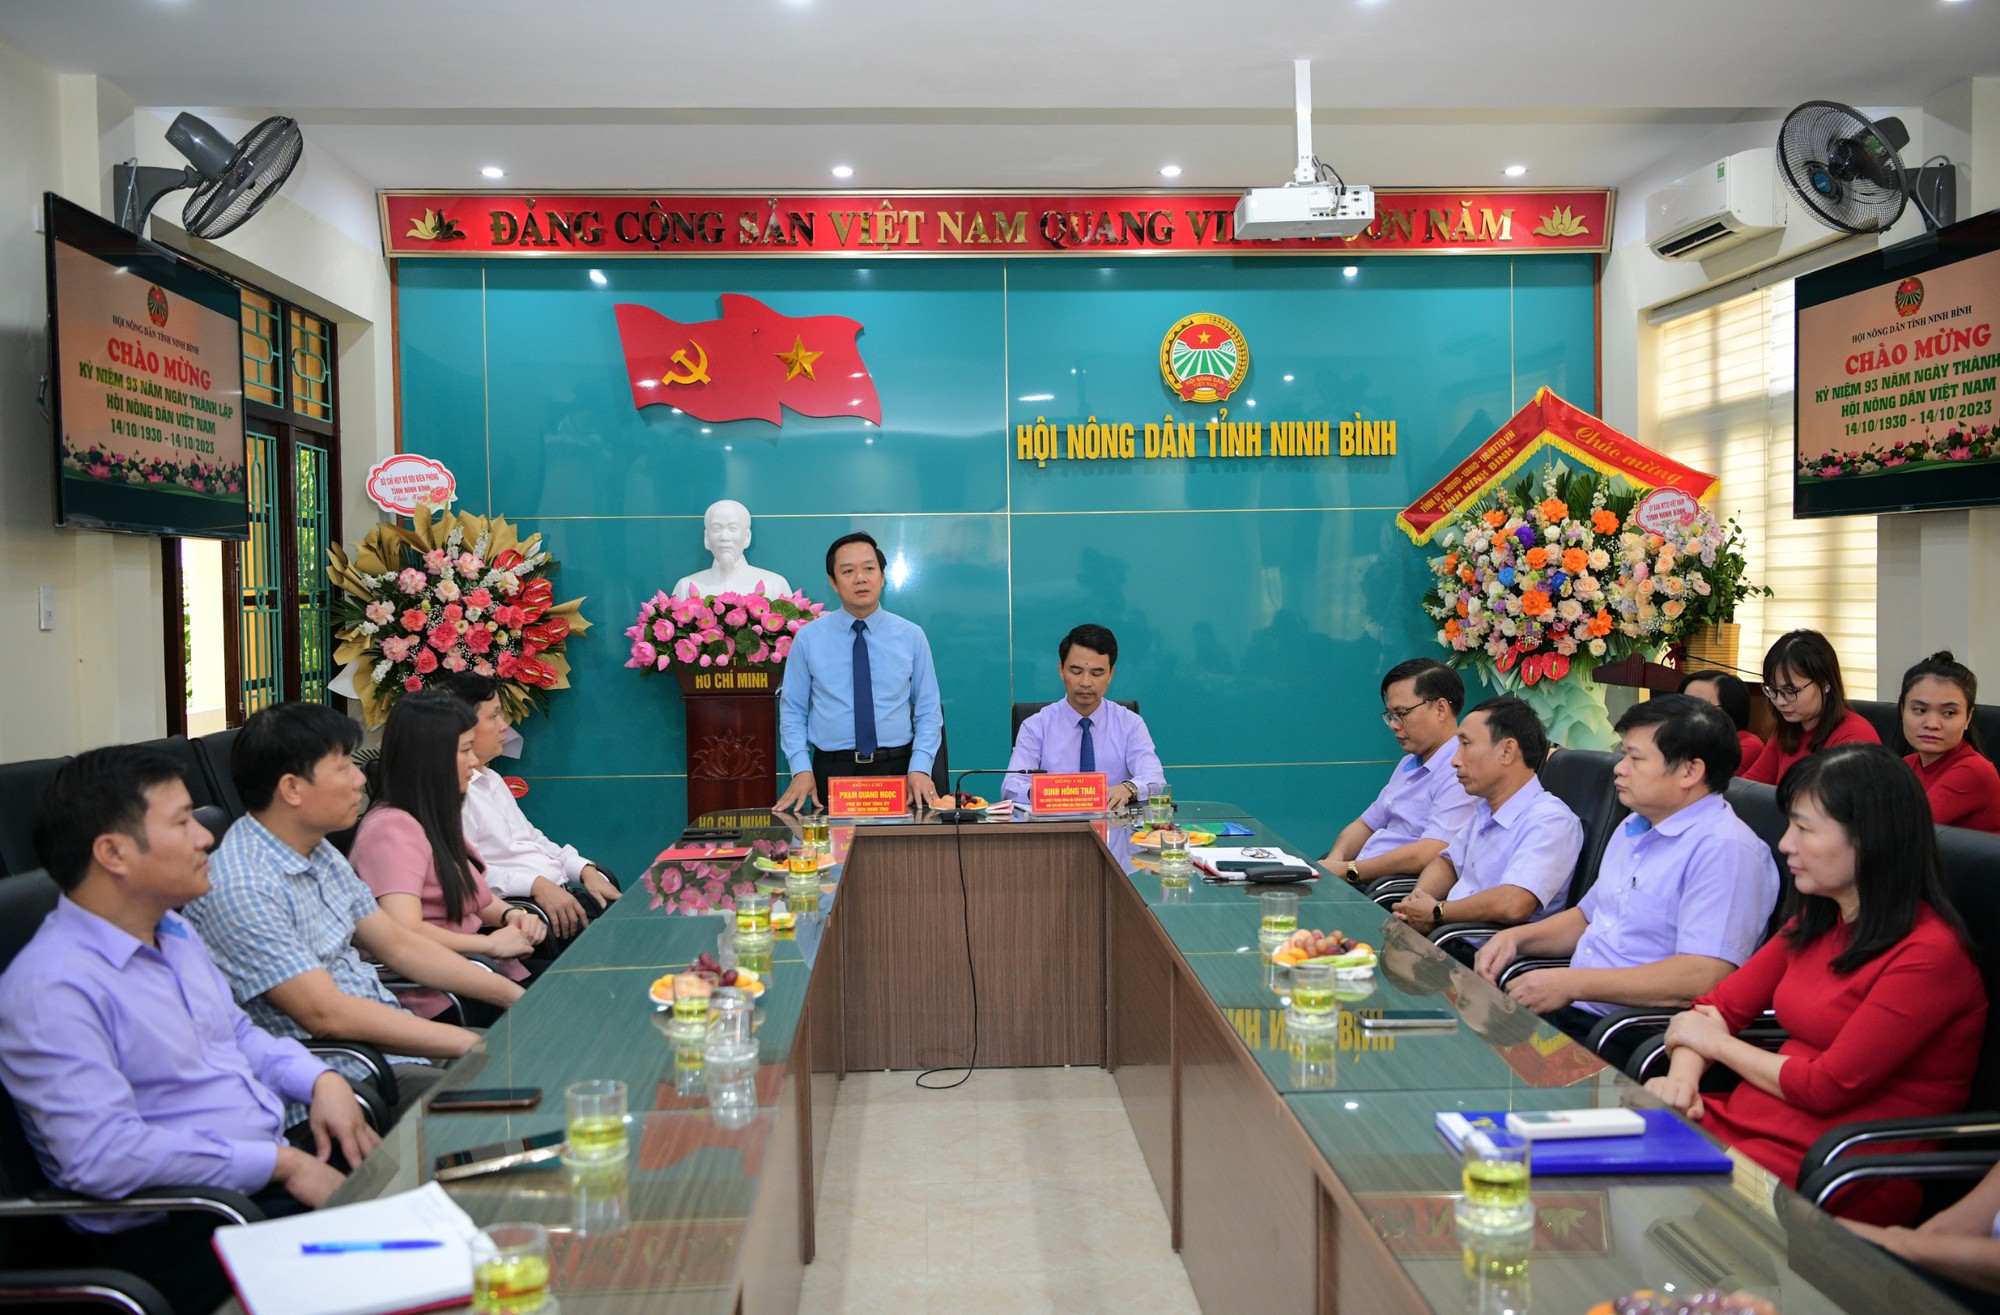 Chủ tịch UBND tỉnh Ninh Bình chúc mừng kỷ niệm 93 năm thành lập Hội NDVN - Ảnh 1.